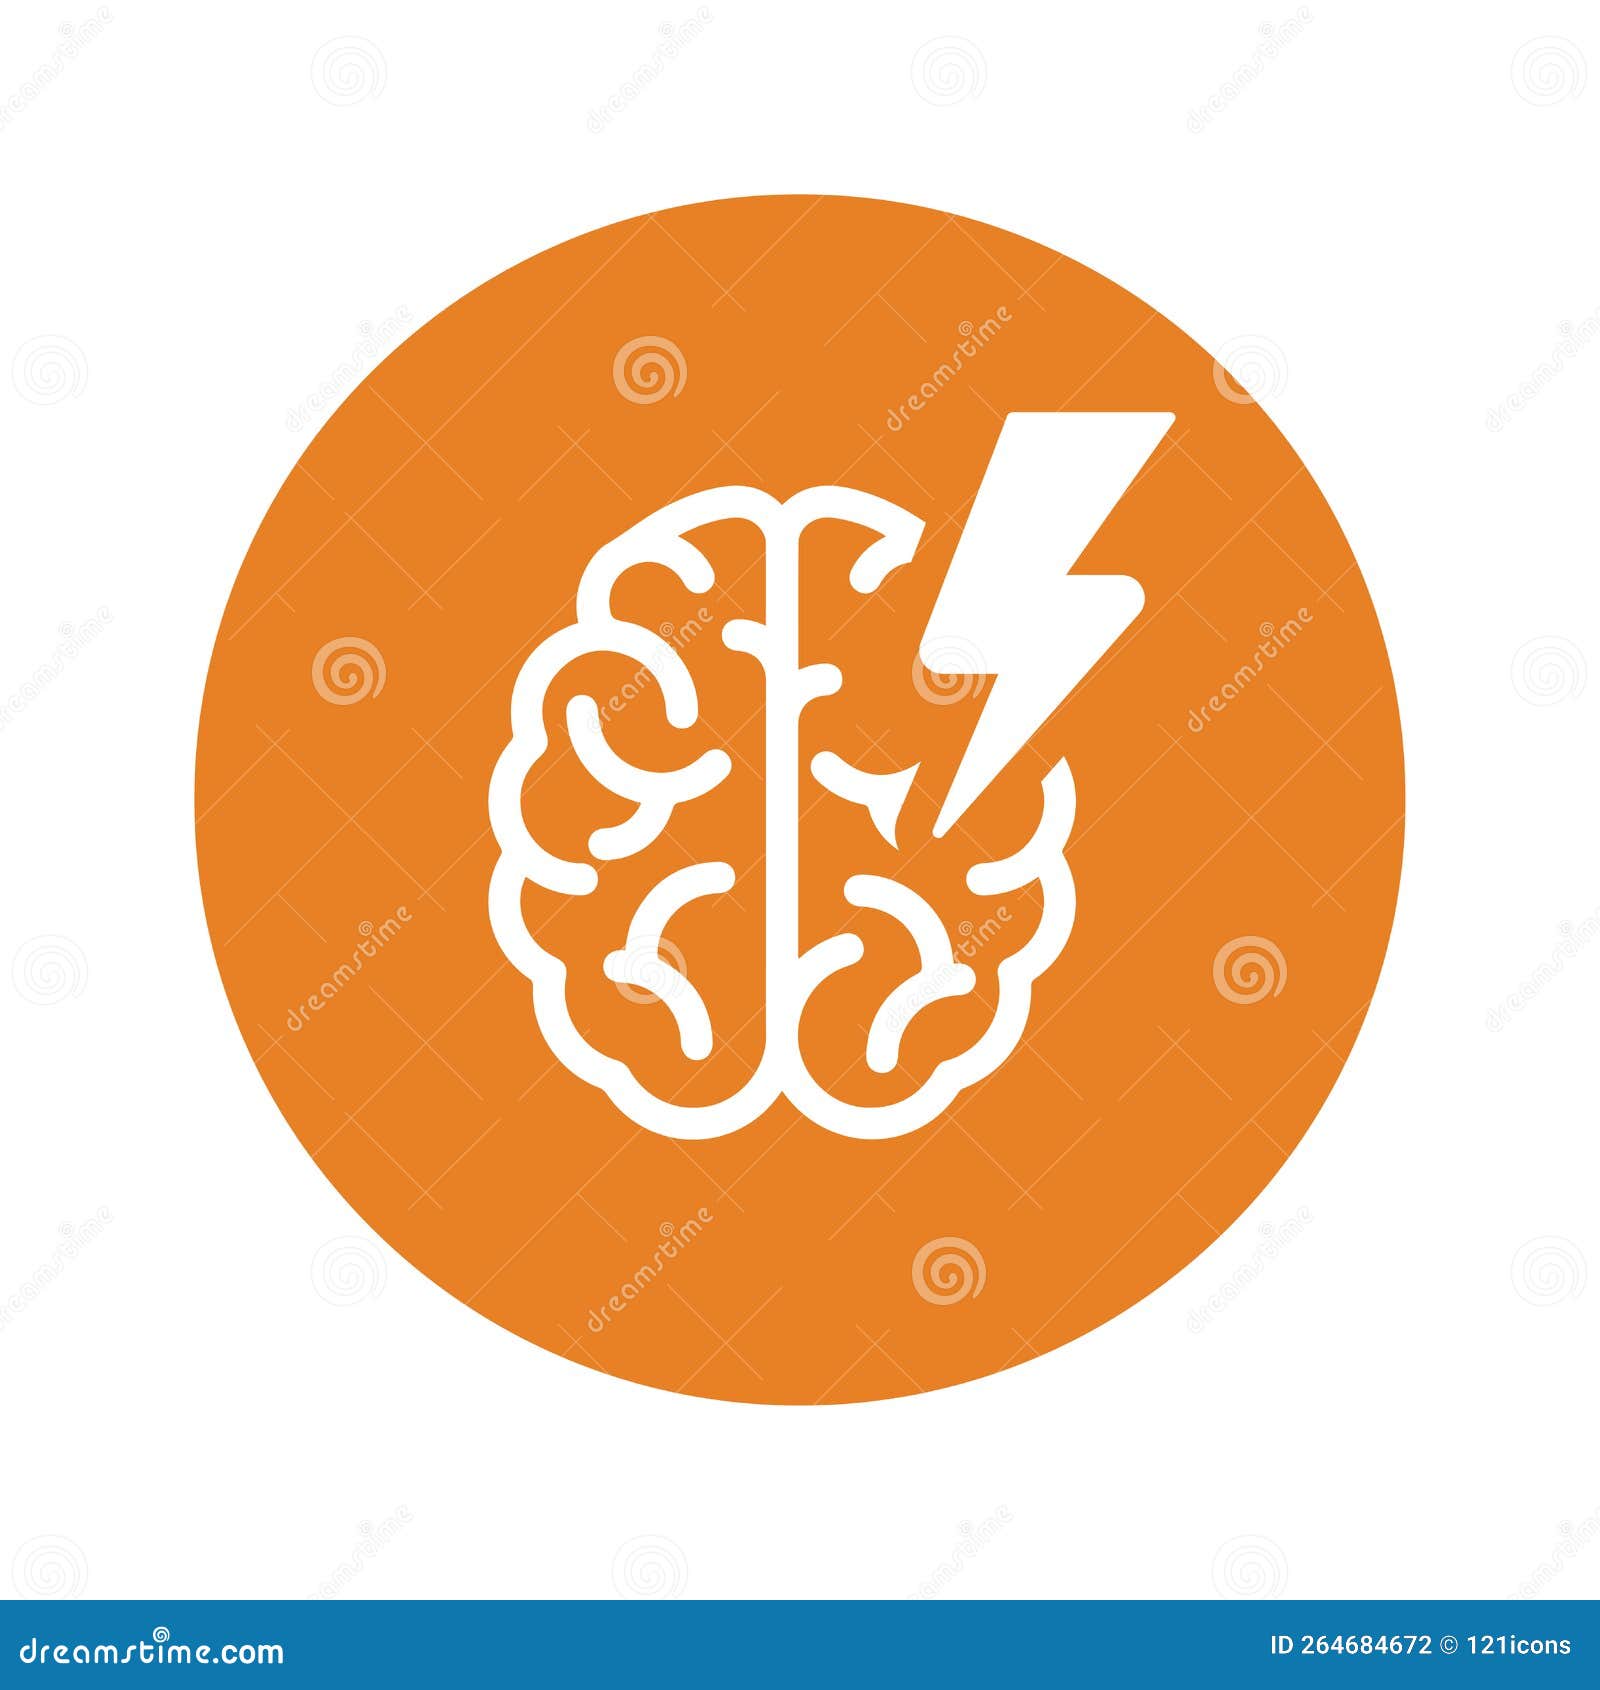 brain, disease, epilepsia icon. orange color  eps